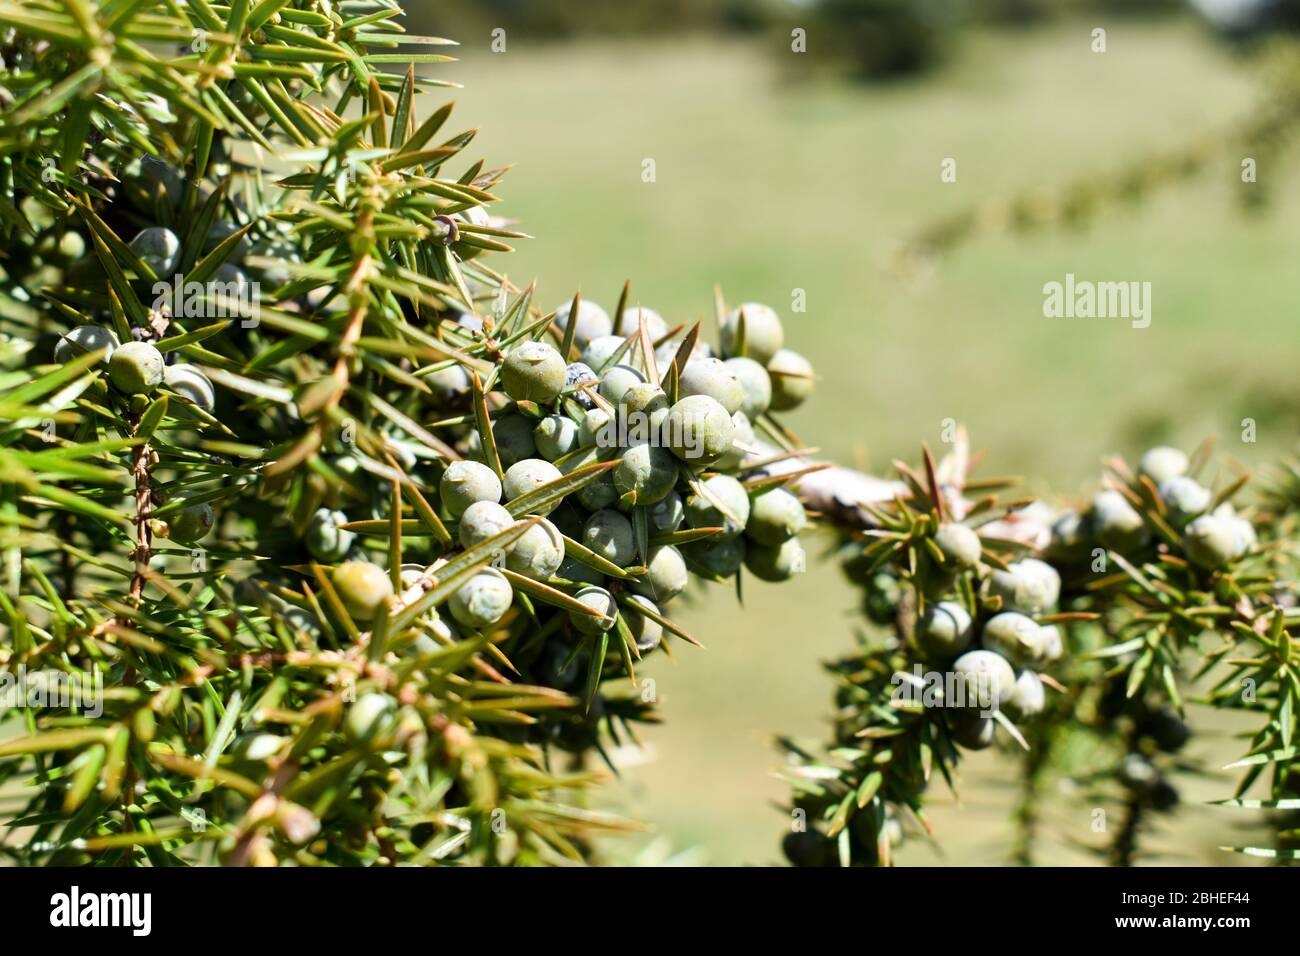 The common juniper ( Juniperus communis). Stock Photo